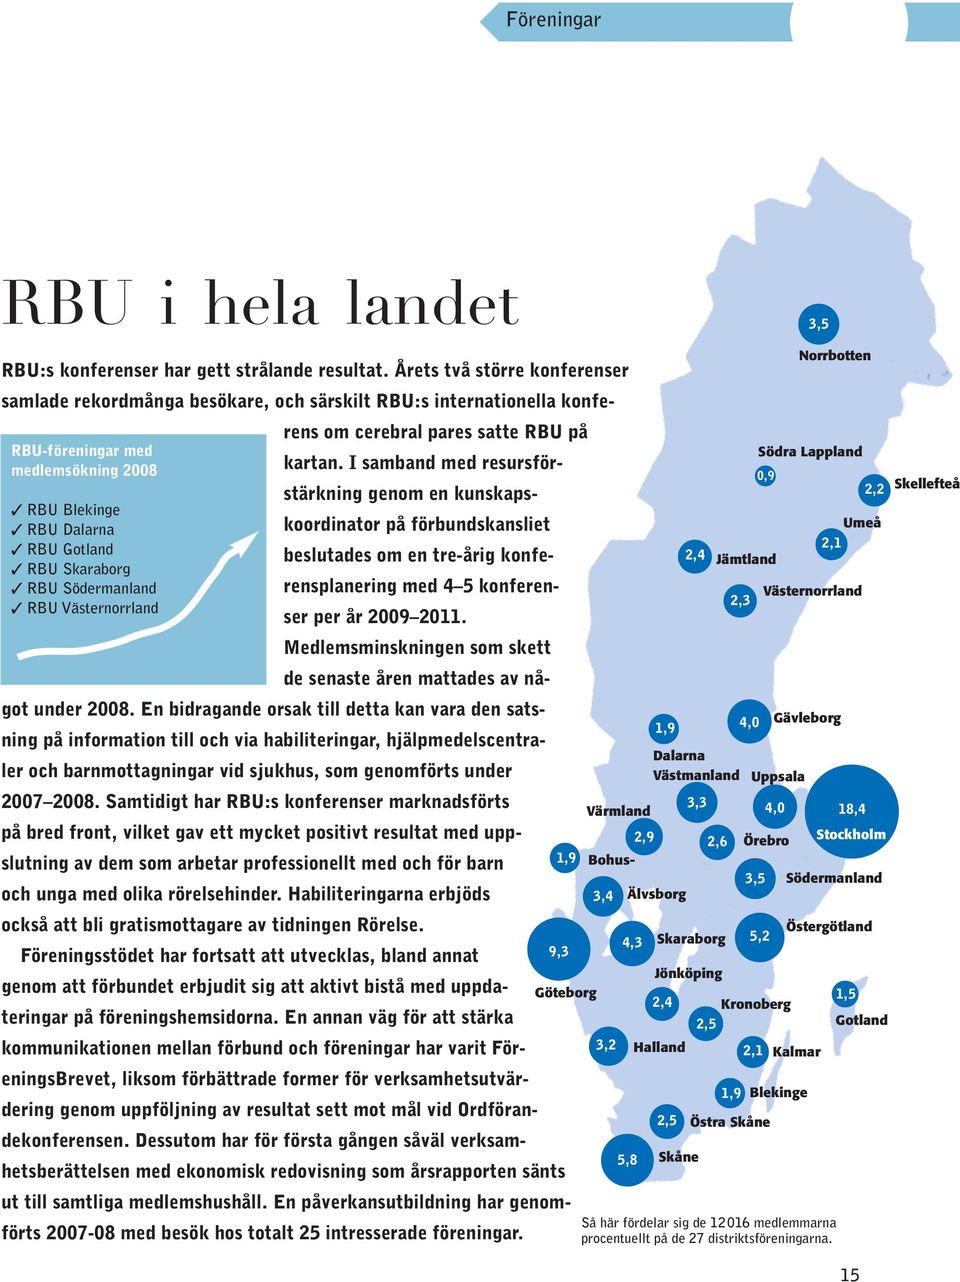 I samband med resursförstärkning genom en kunskapskoordinator på förbundskansliet RBU Blekinge RBU Dalarna RBU Gotland beslutades om en tre-årig konferensplanering med 4 5 konferen- RBU Skaraborg RBU